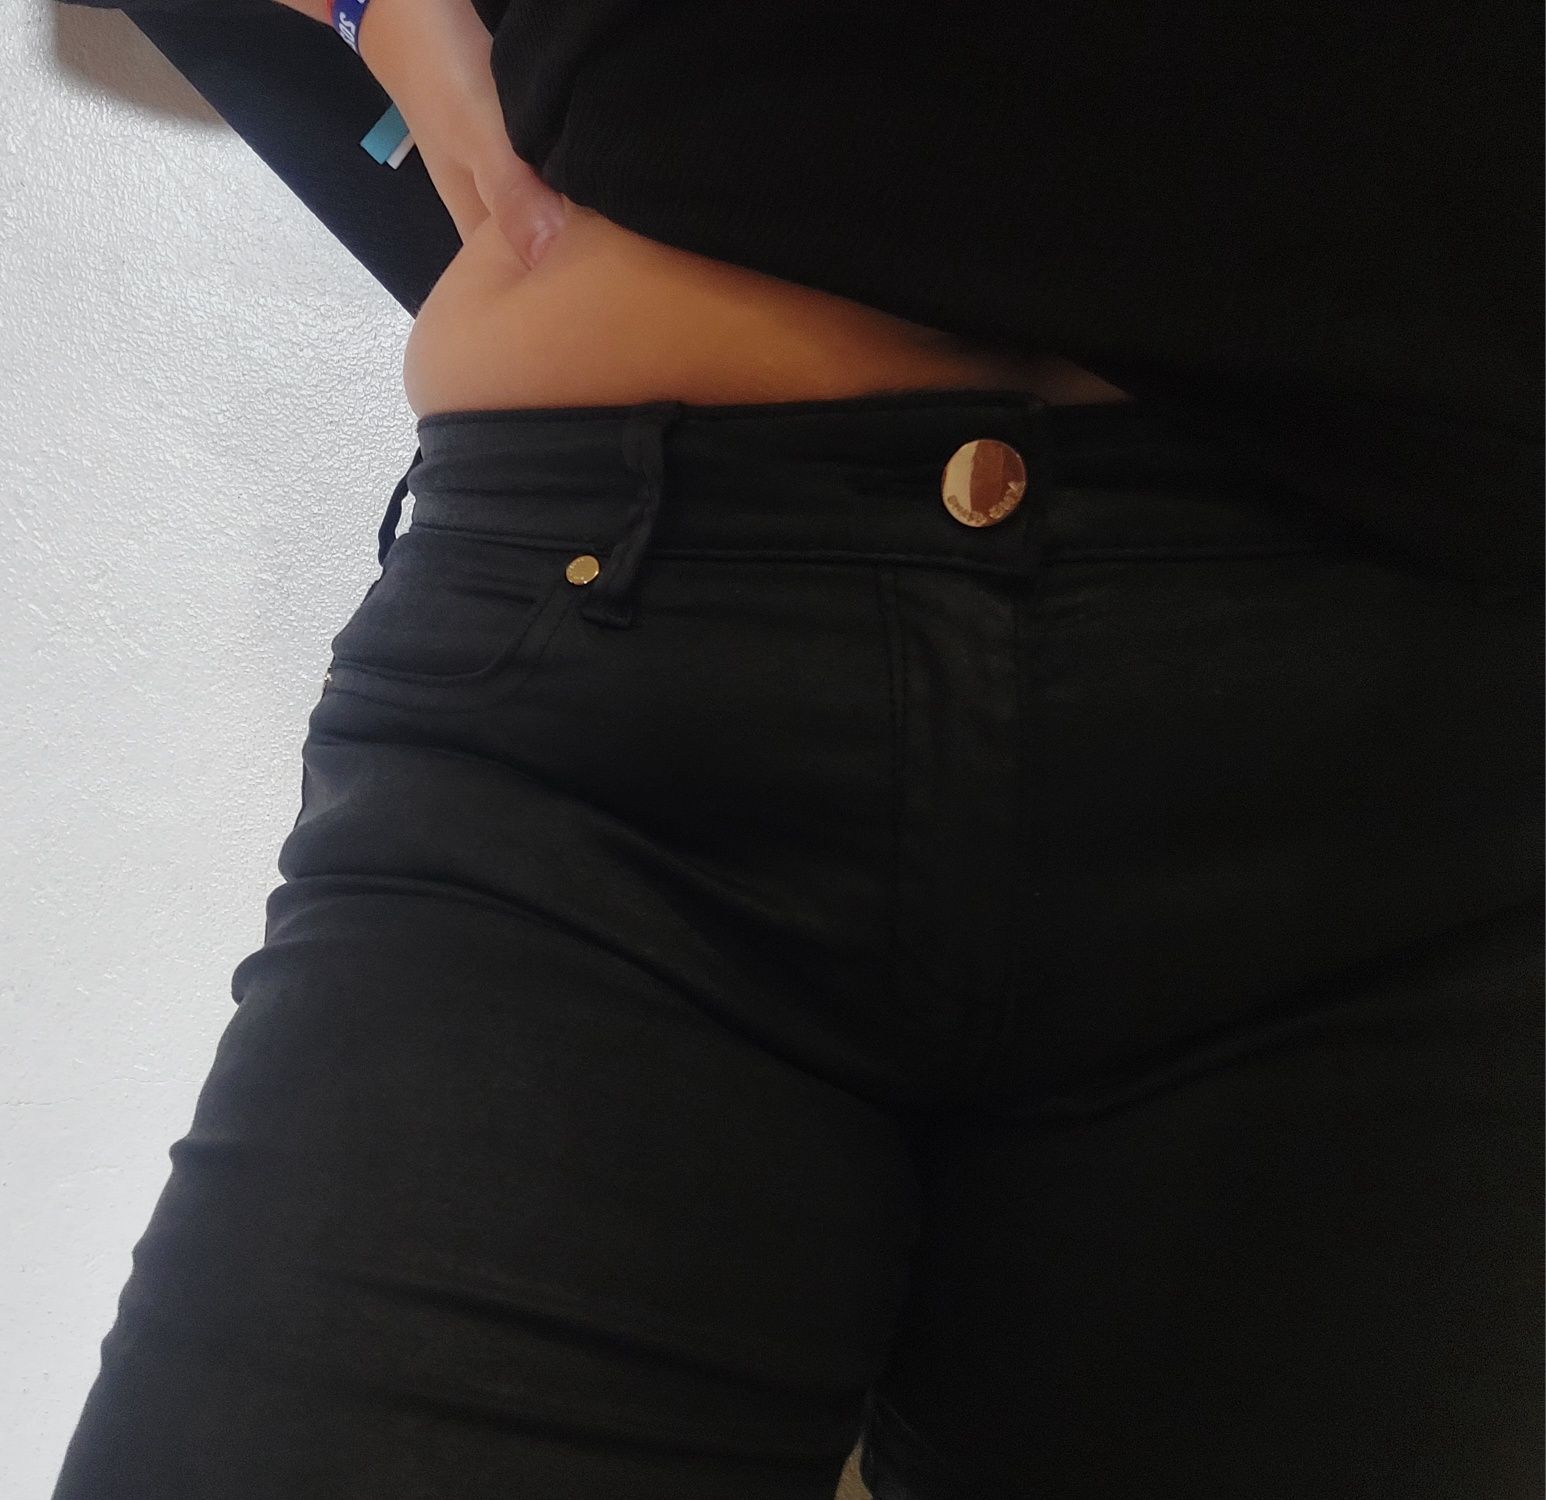 Calças pretas mango jeans tamanho 38